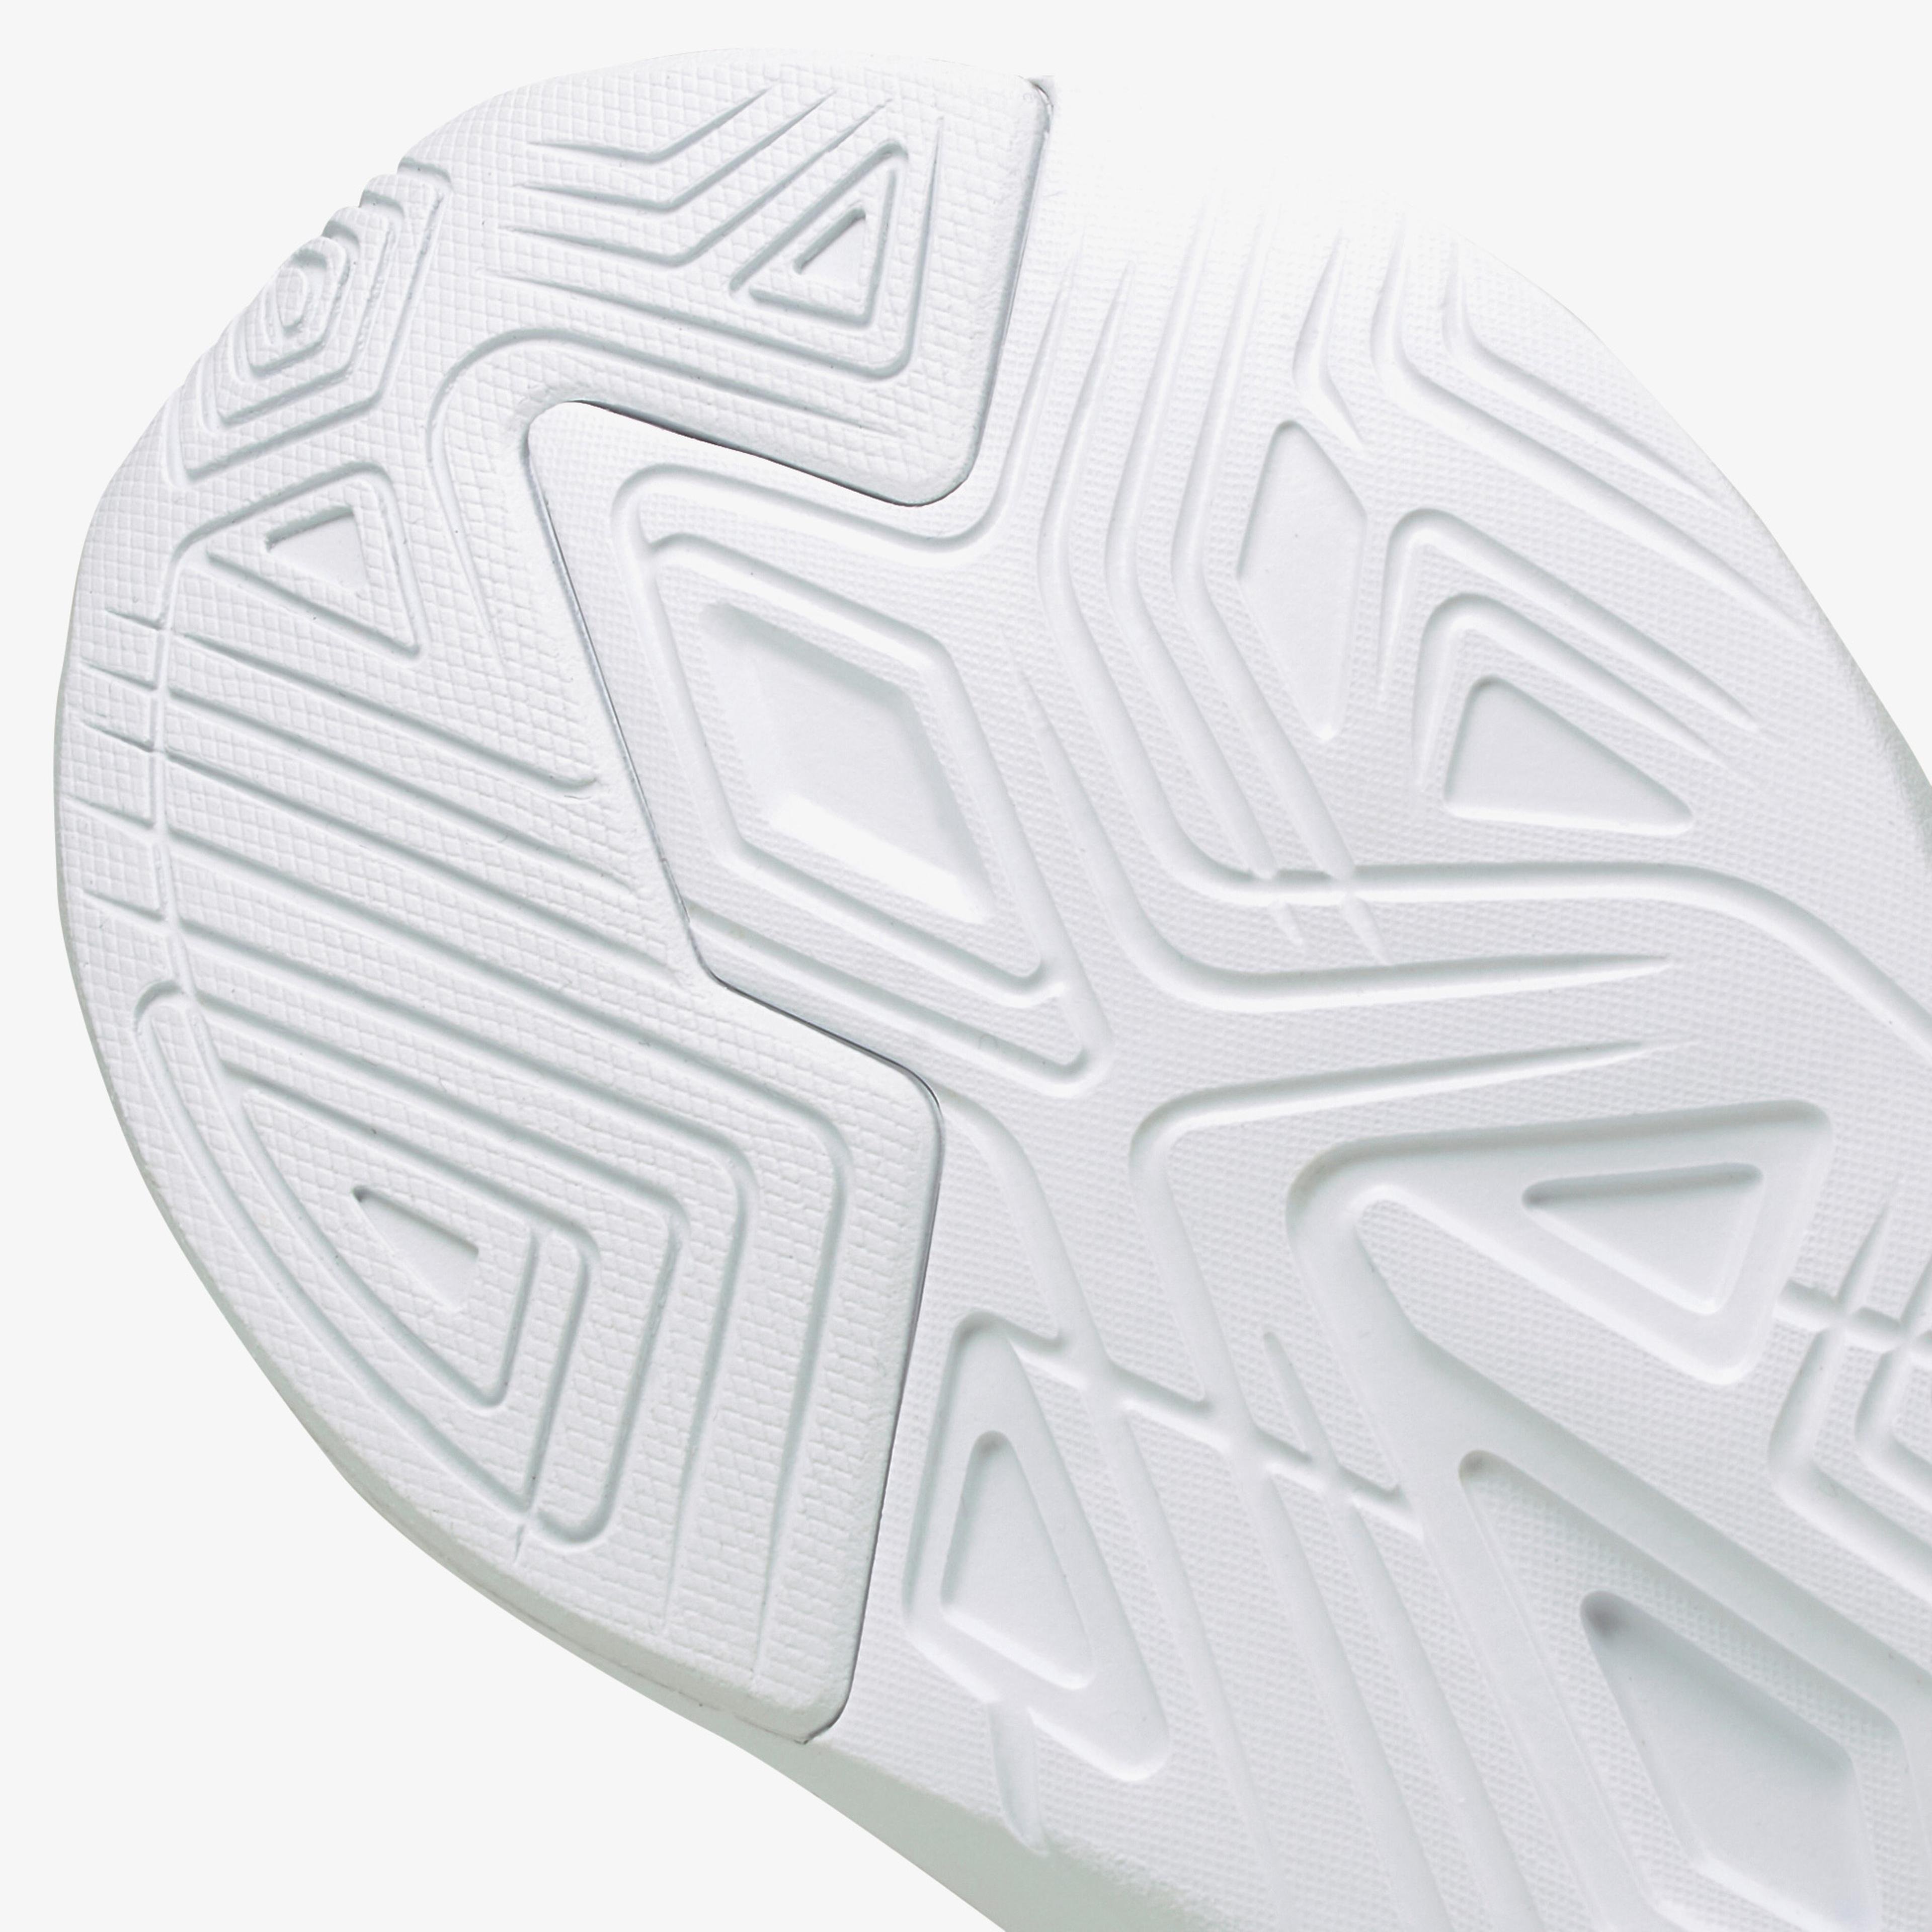 Puma Softride Sophia Shimmer Kadın Beyaz Spor Ayakkabı